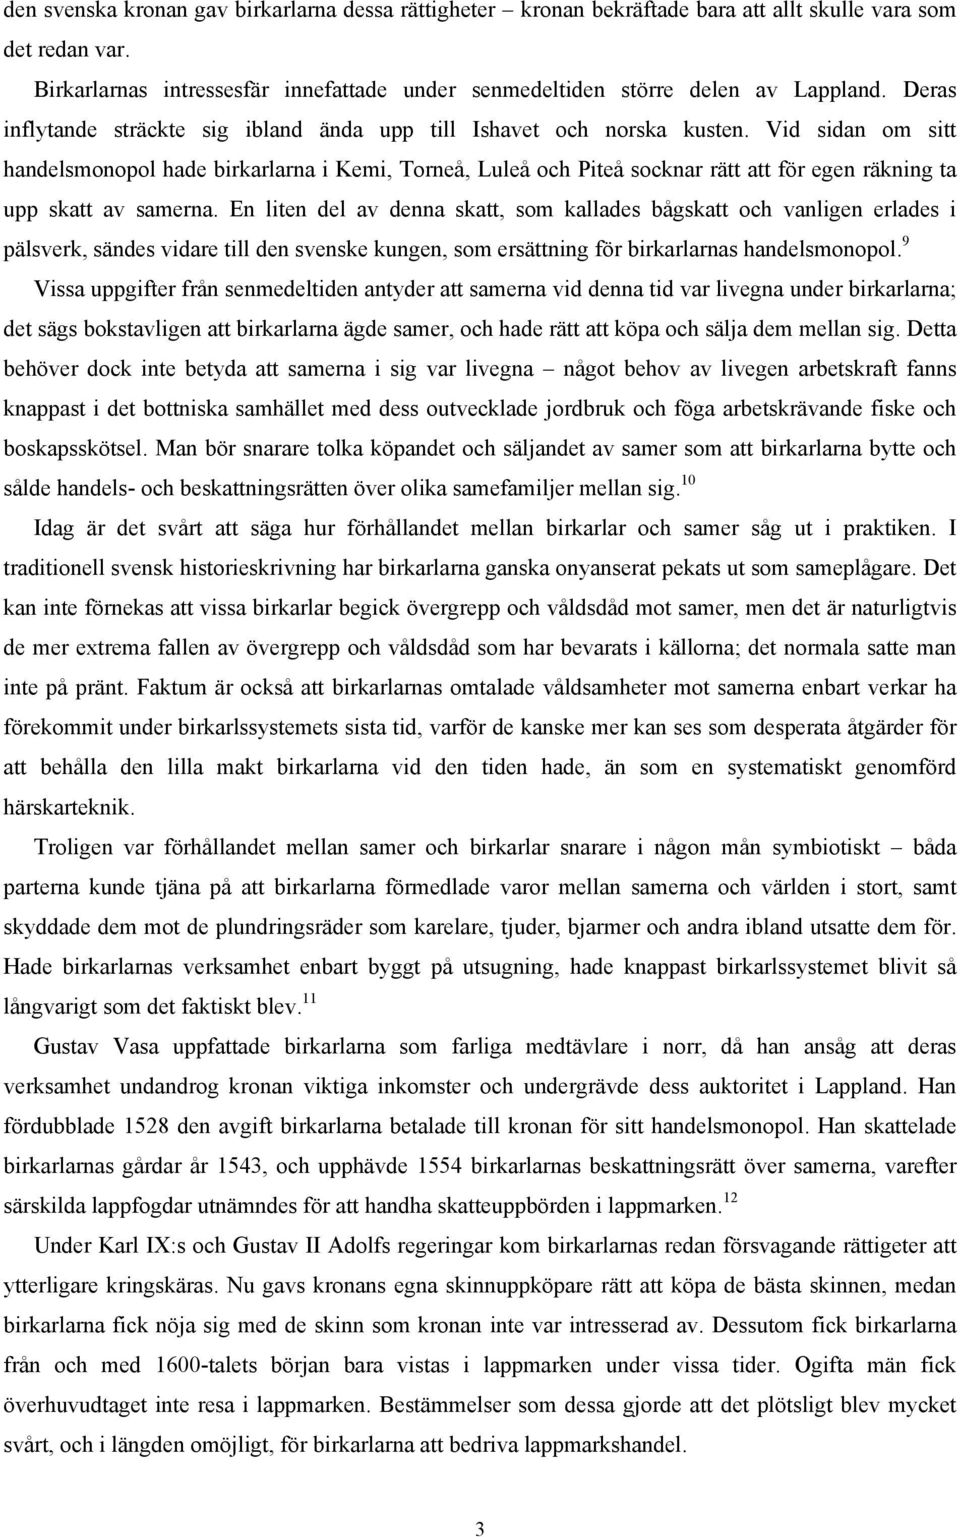 Vid sidan om sitt handelsmonopol hade birkarlarna i Kemi, Torneå, Luleå och Piteå socknar rätt att för egen räkning ta upp skatt av samerna.